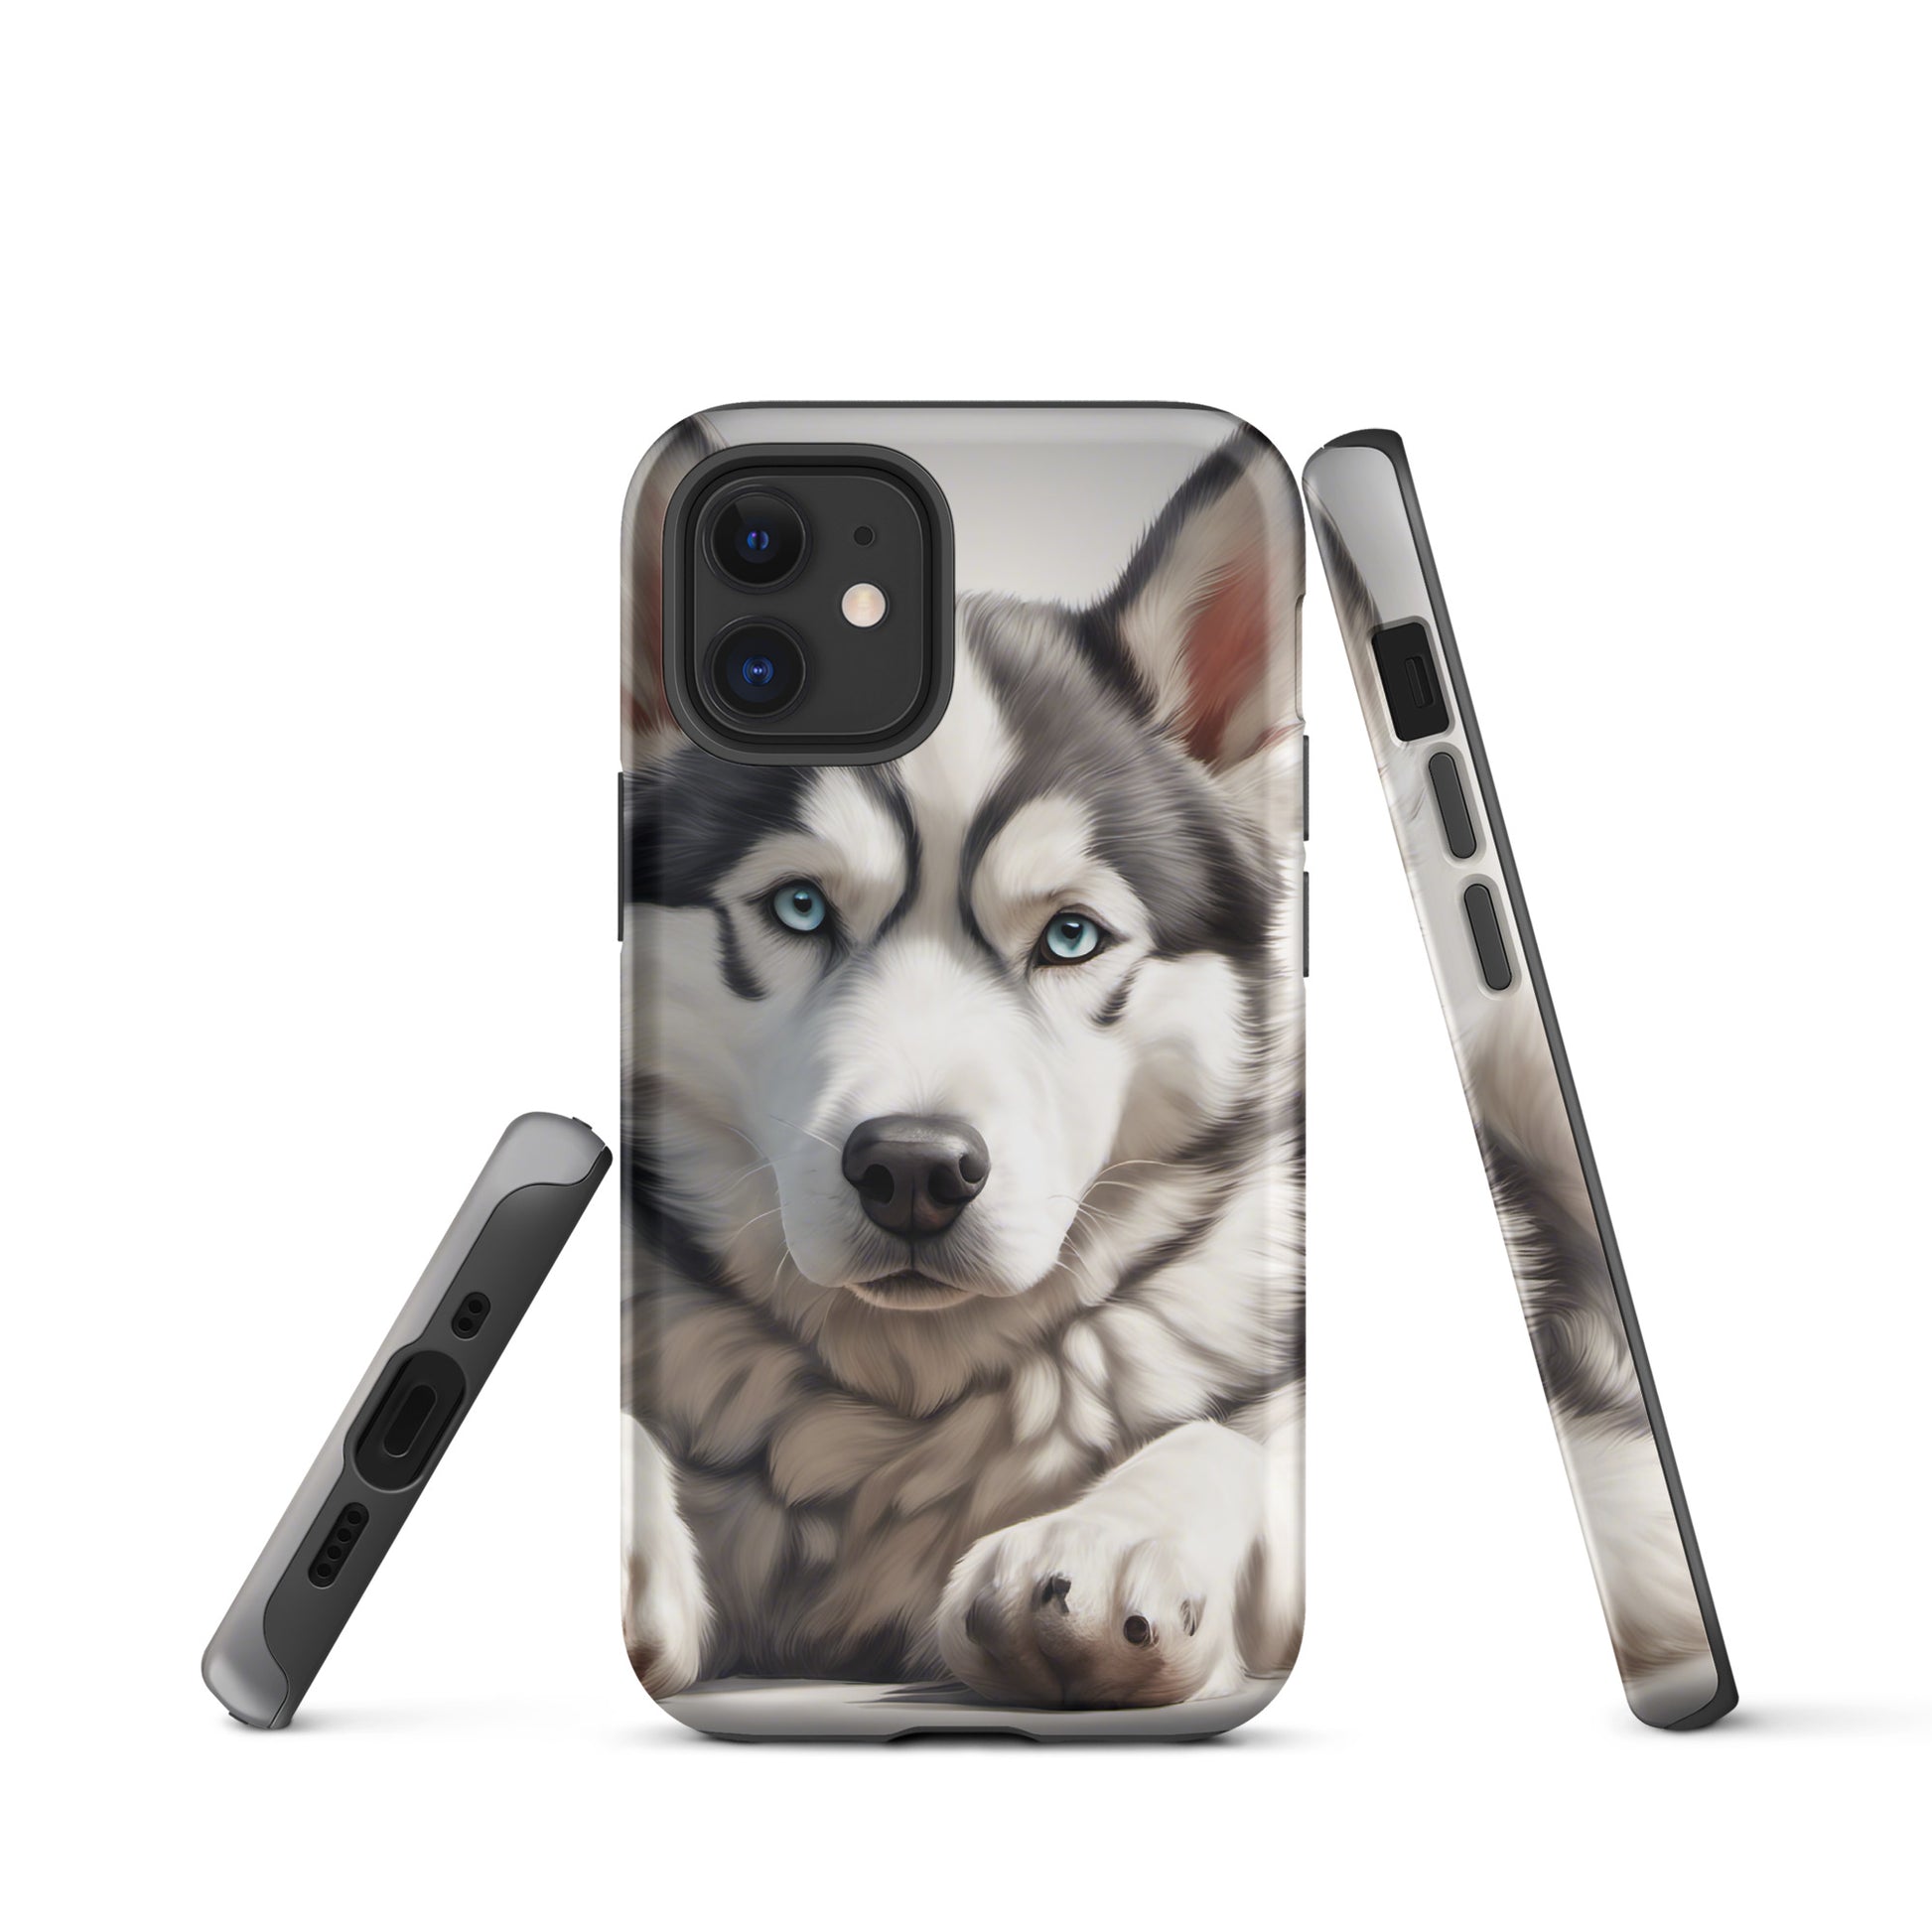 Alaskan Huskey Tough Case for iPhone® CedarHill Country Market